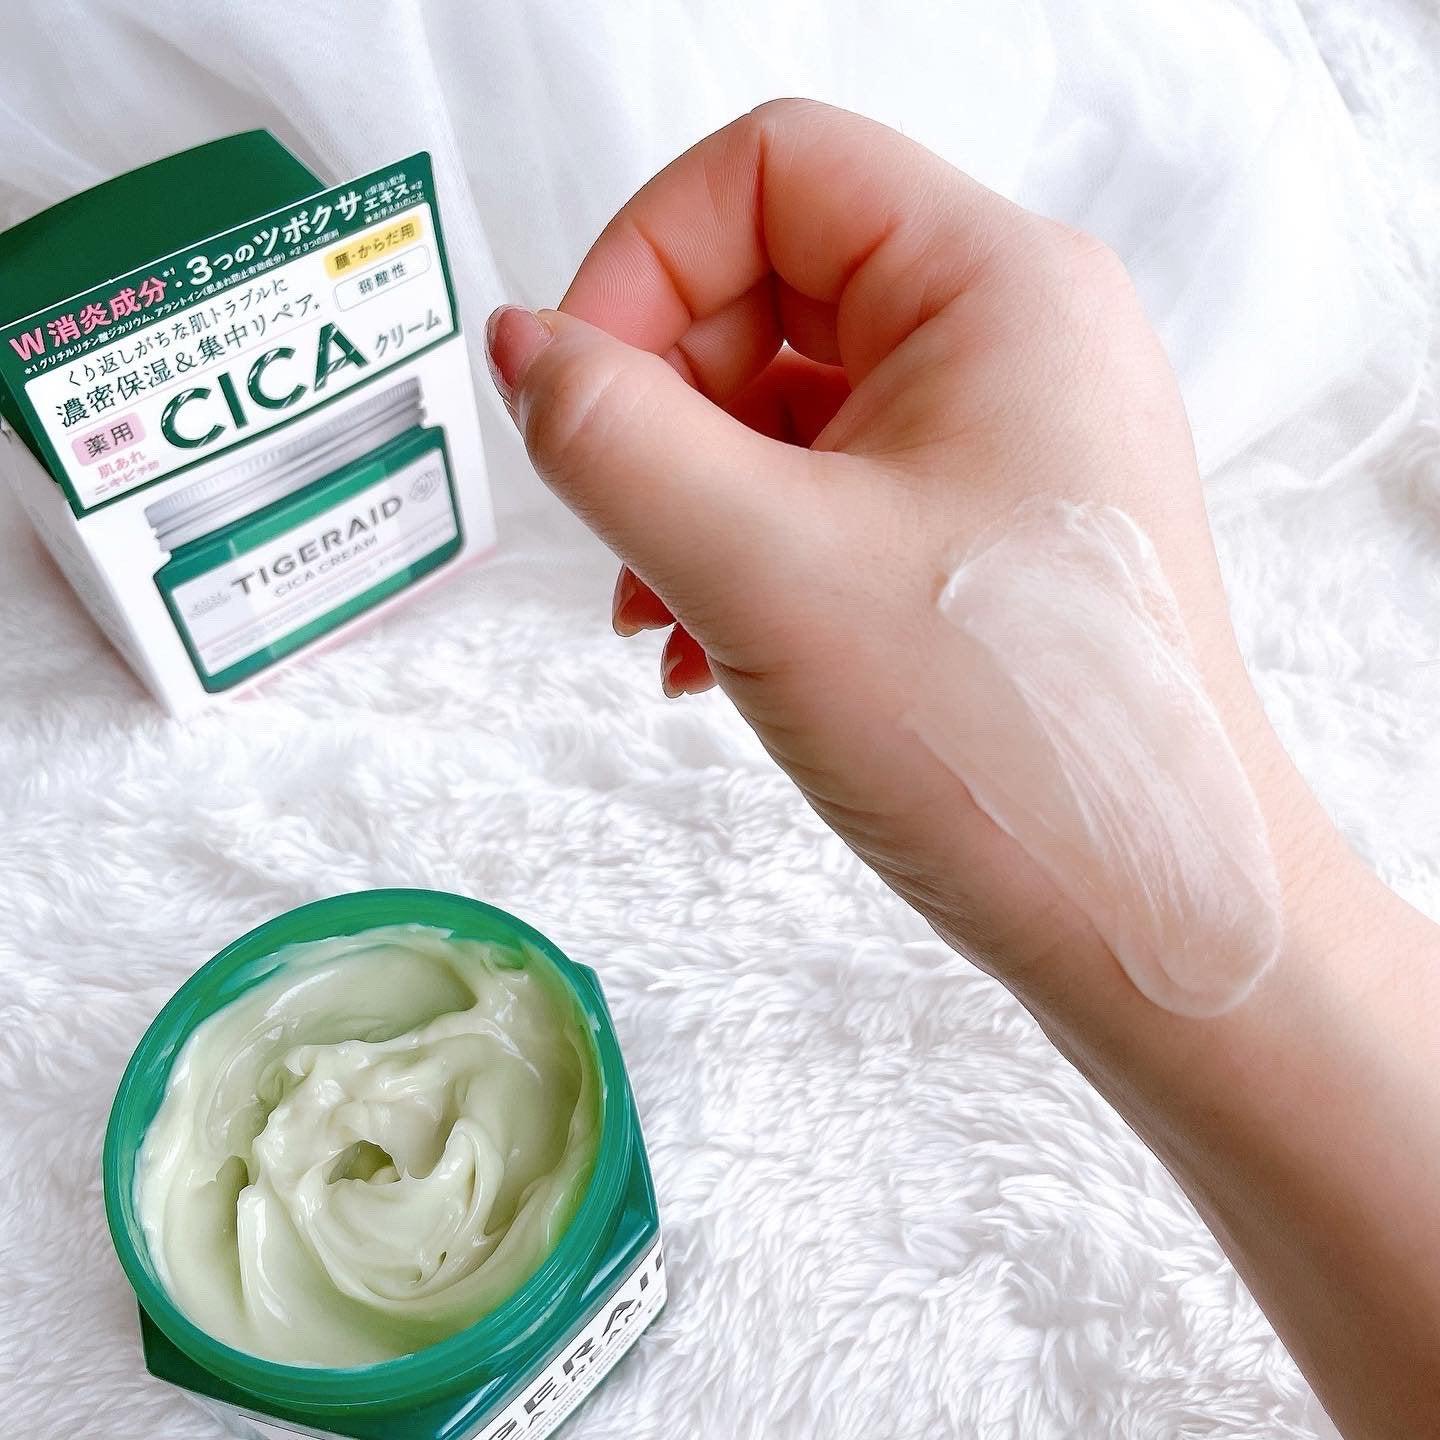 Kosé Tigeraid Cica Moisturizing Repair Cream For Face & Body 150g